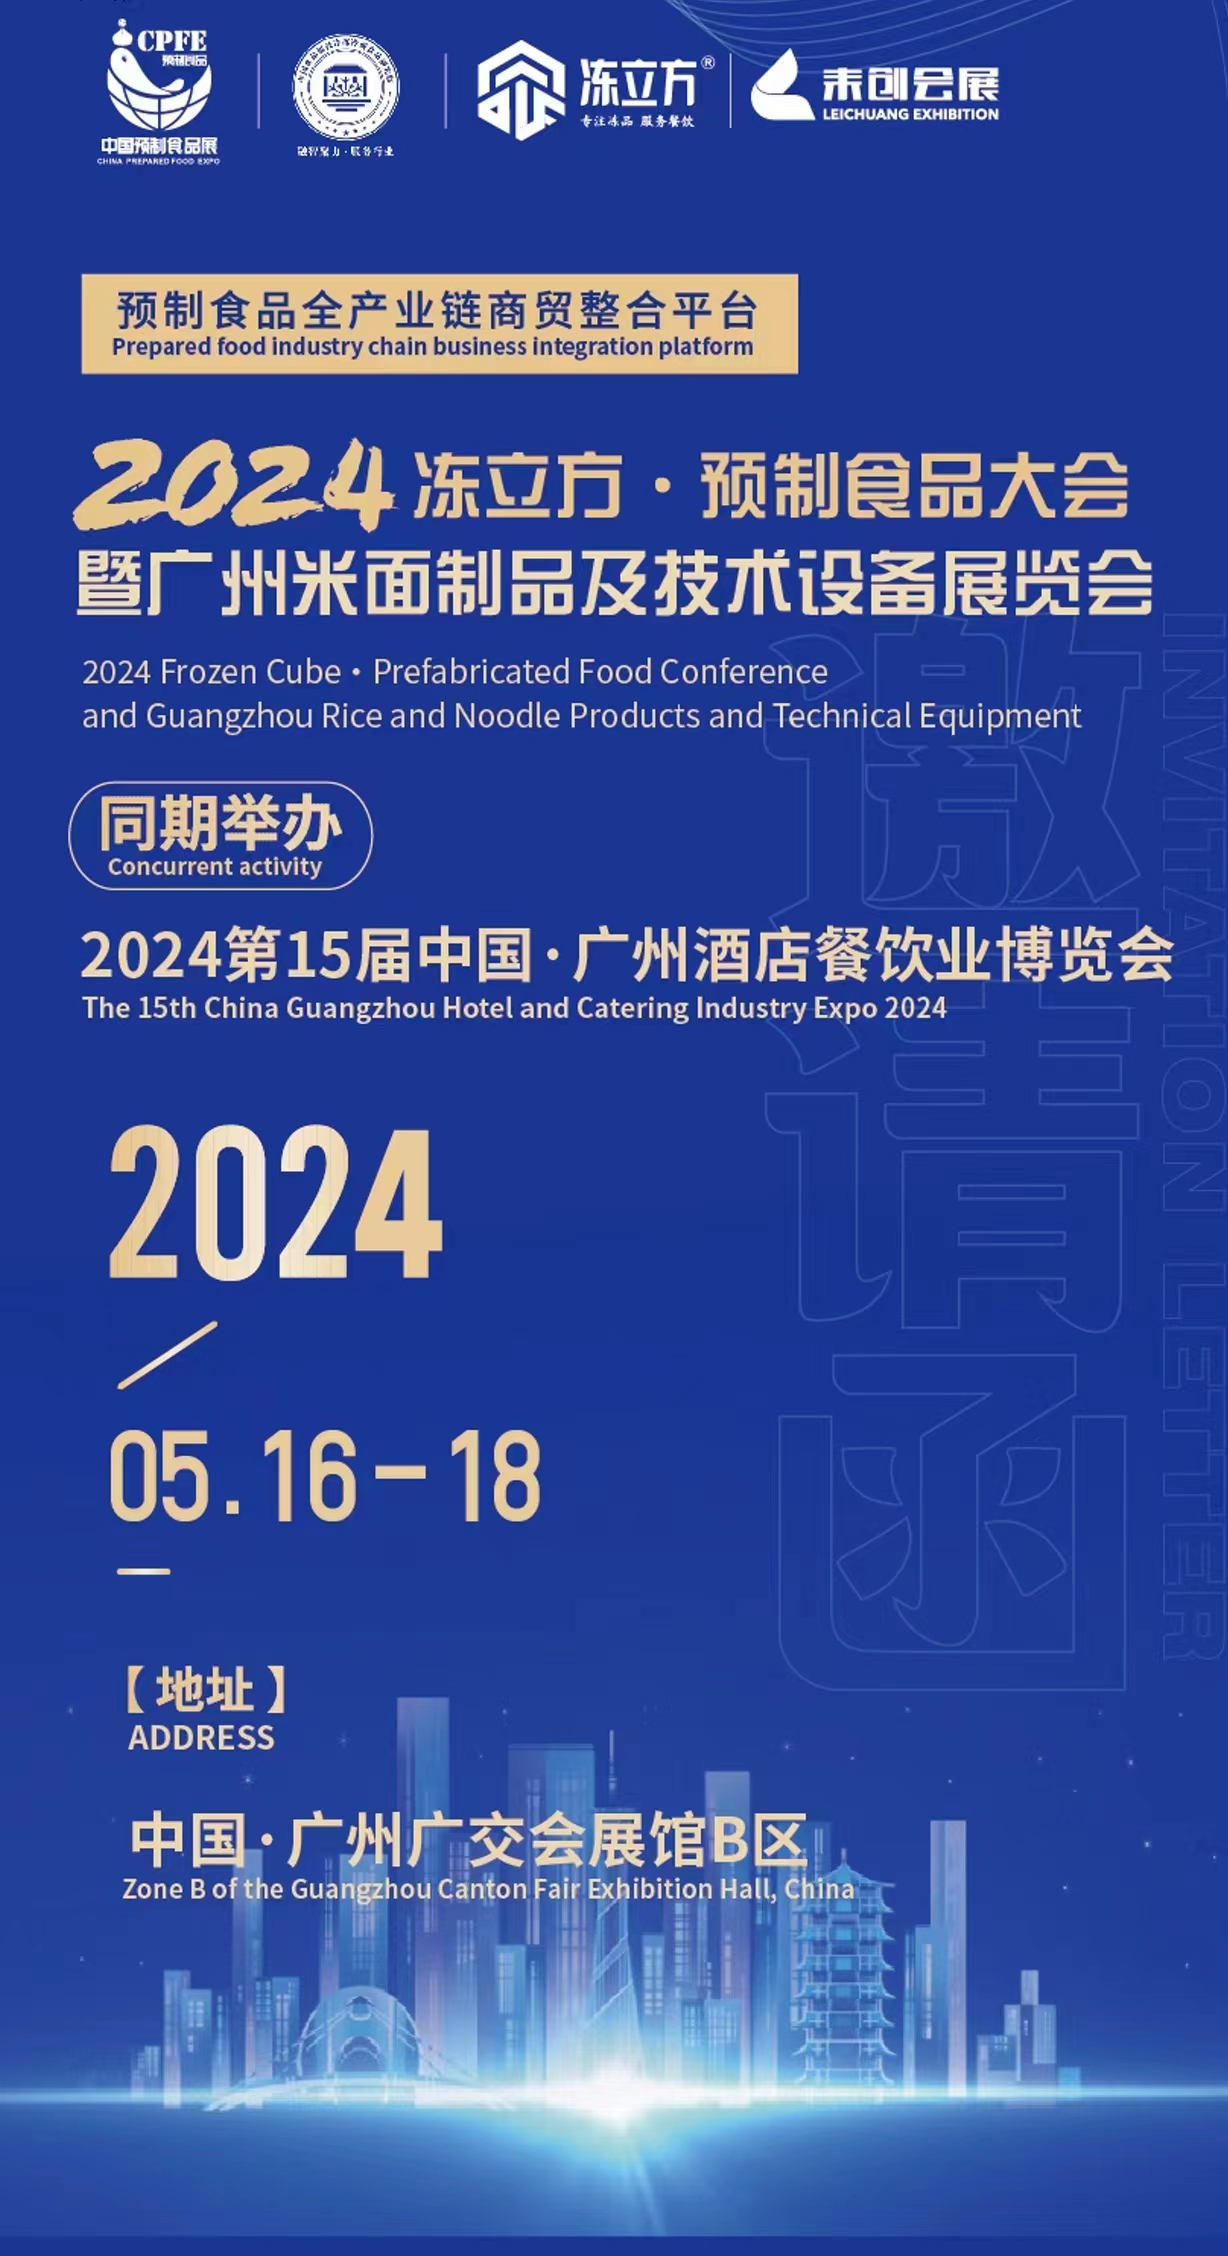 2024 冻立方预制食品暨广州米面制品及技术设备展览会